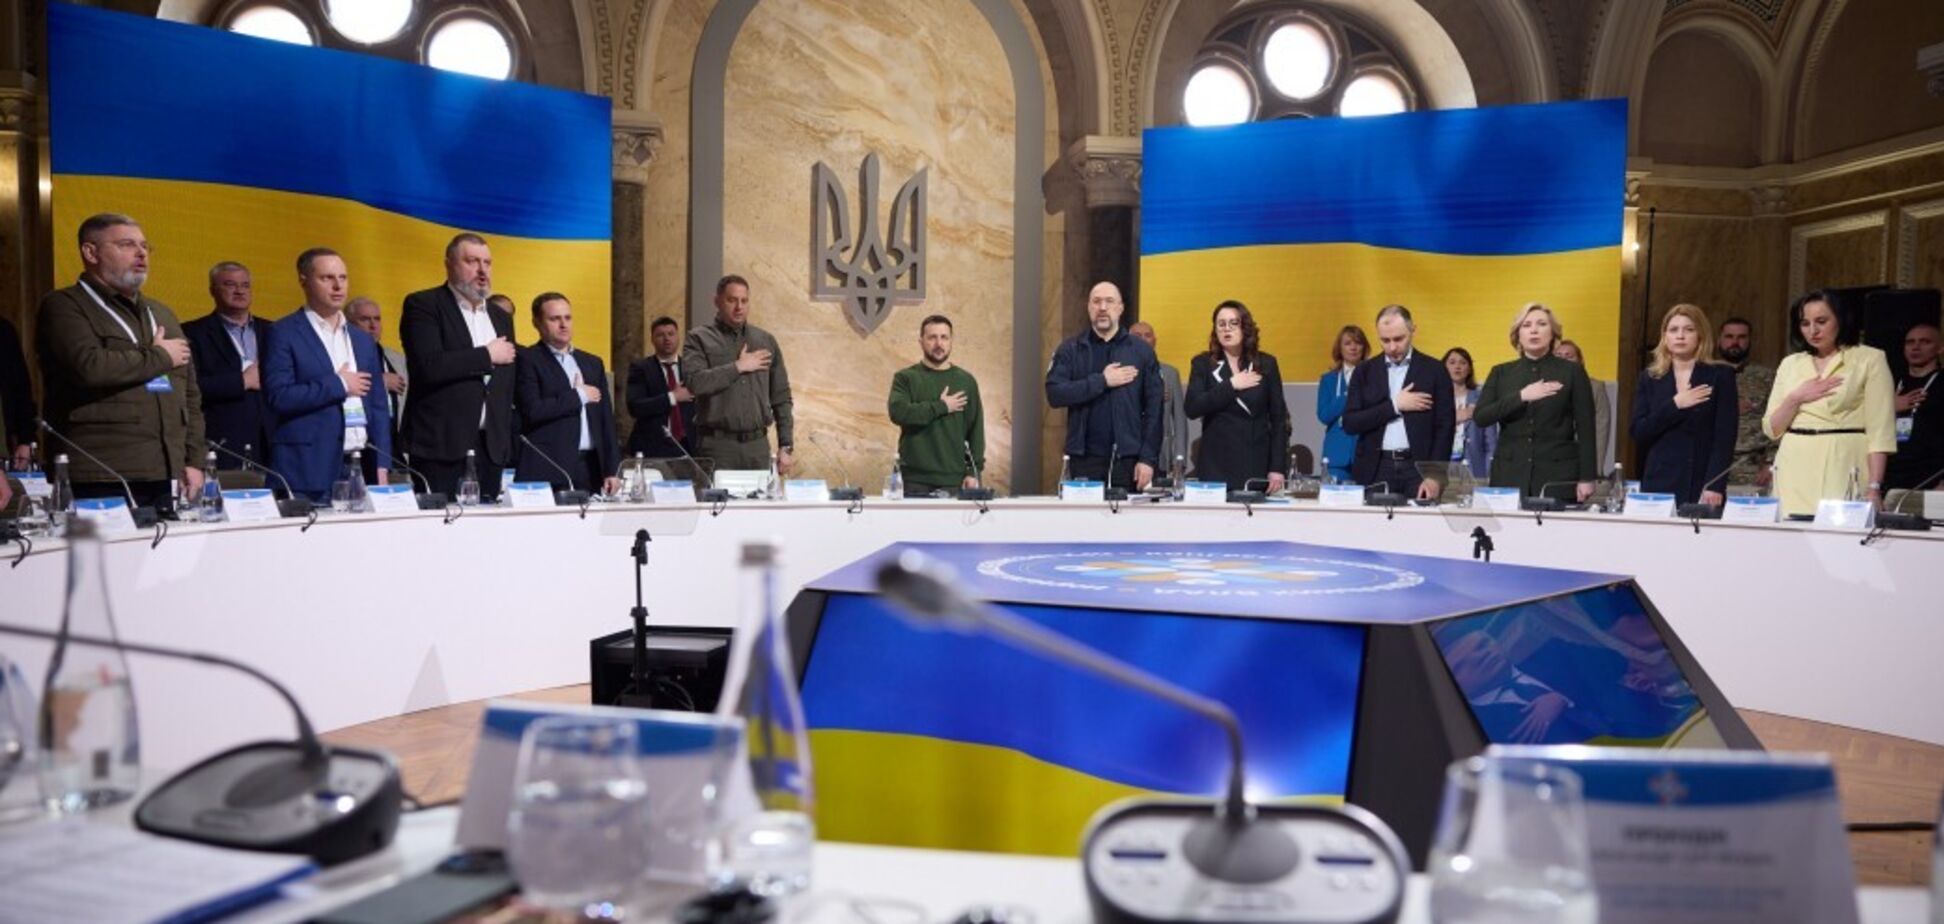 ’Остановить российскую агрессию’: Зеленский напомнил местным властям главную потребность всех украинцев. Фото и видео